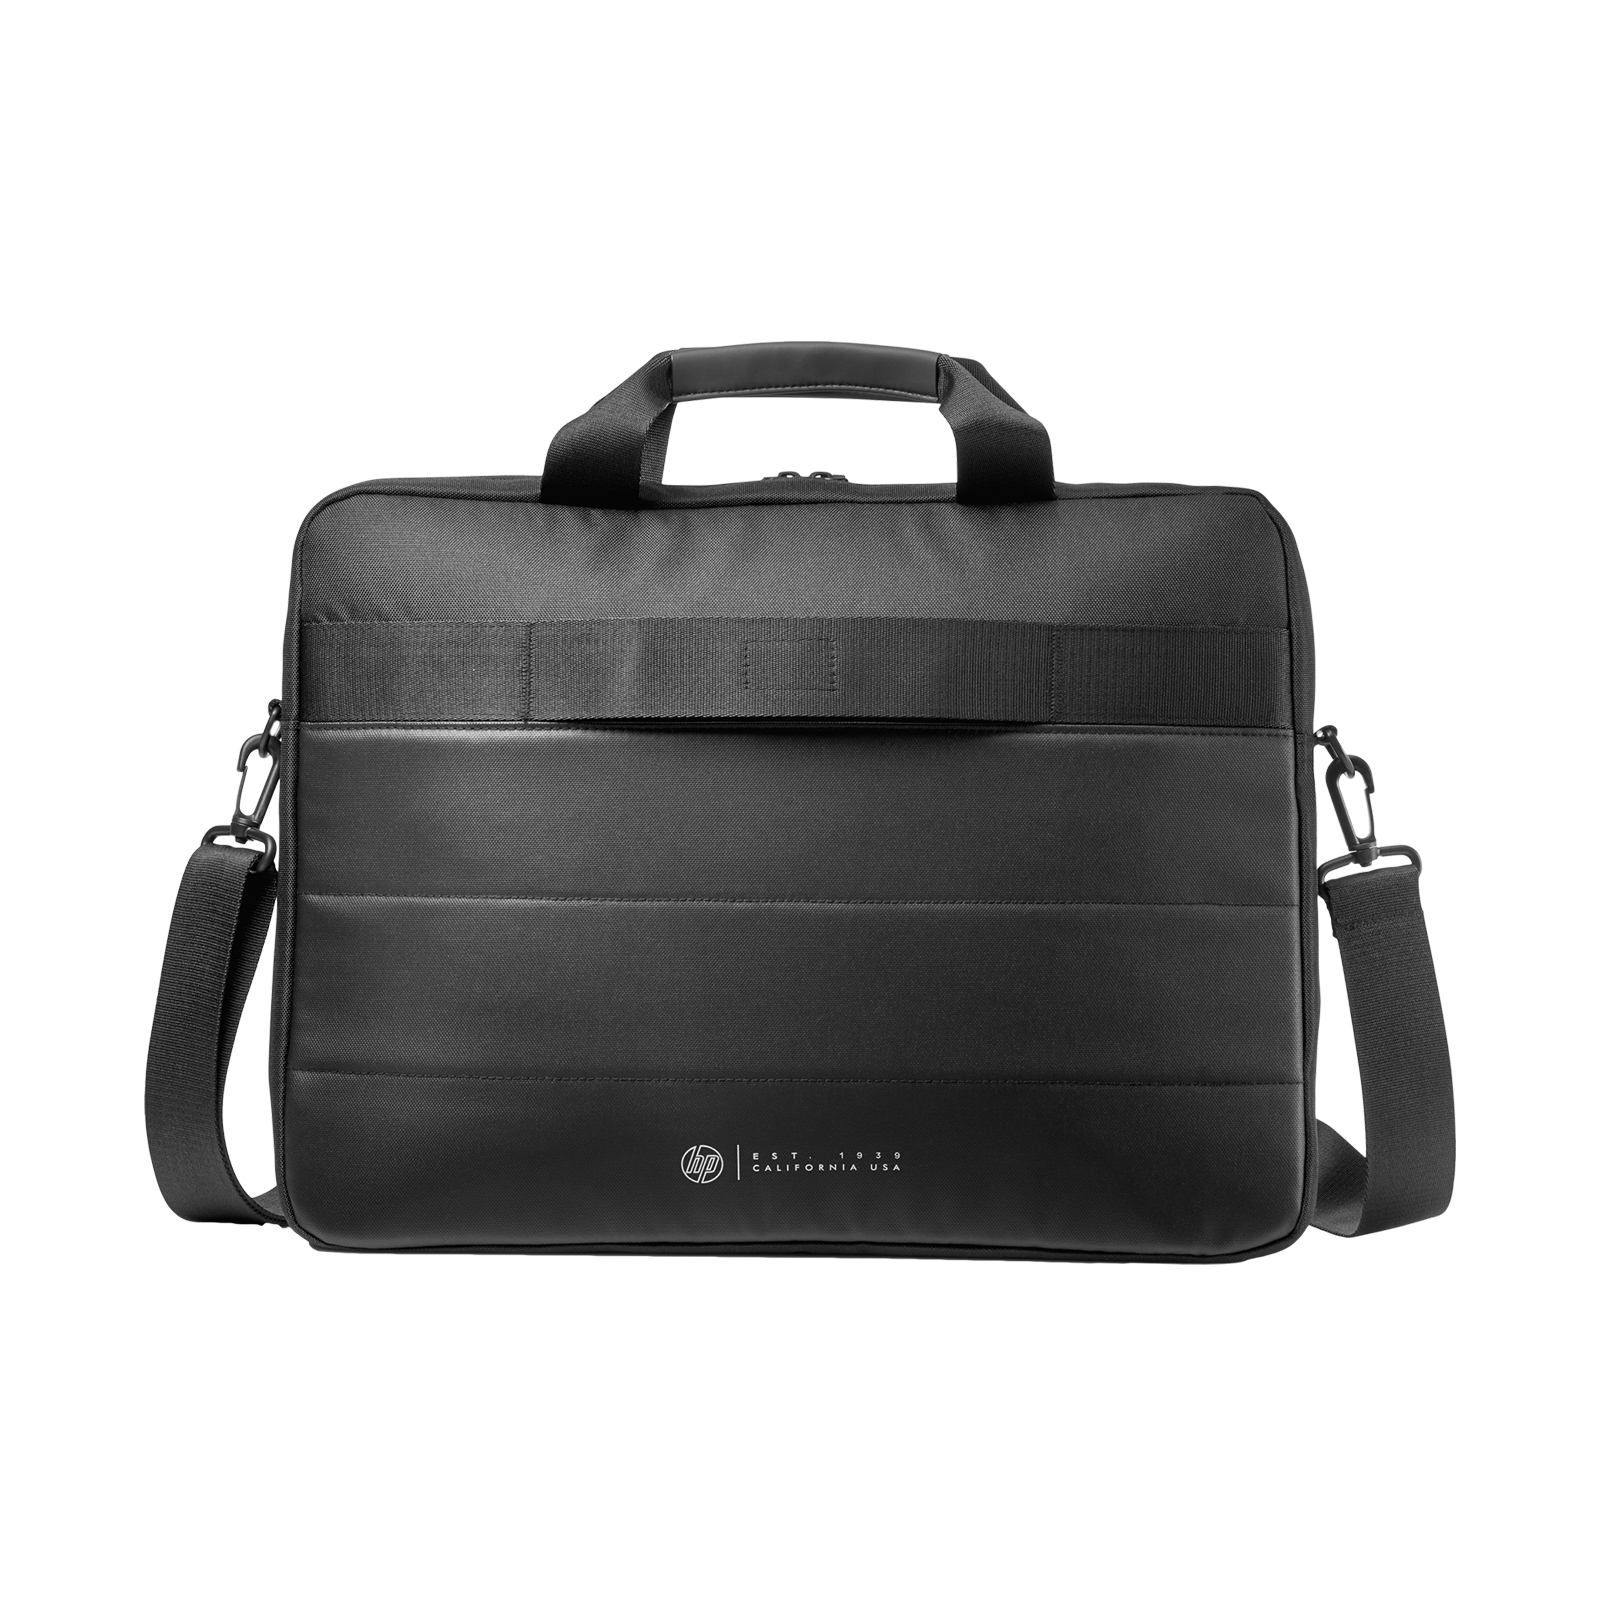 Aggregate 81+ hp laptop shoulder bag super hot - esthdonghoadian